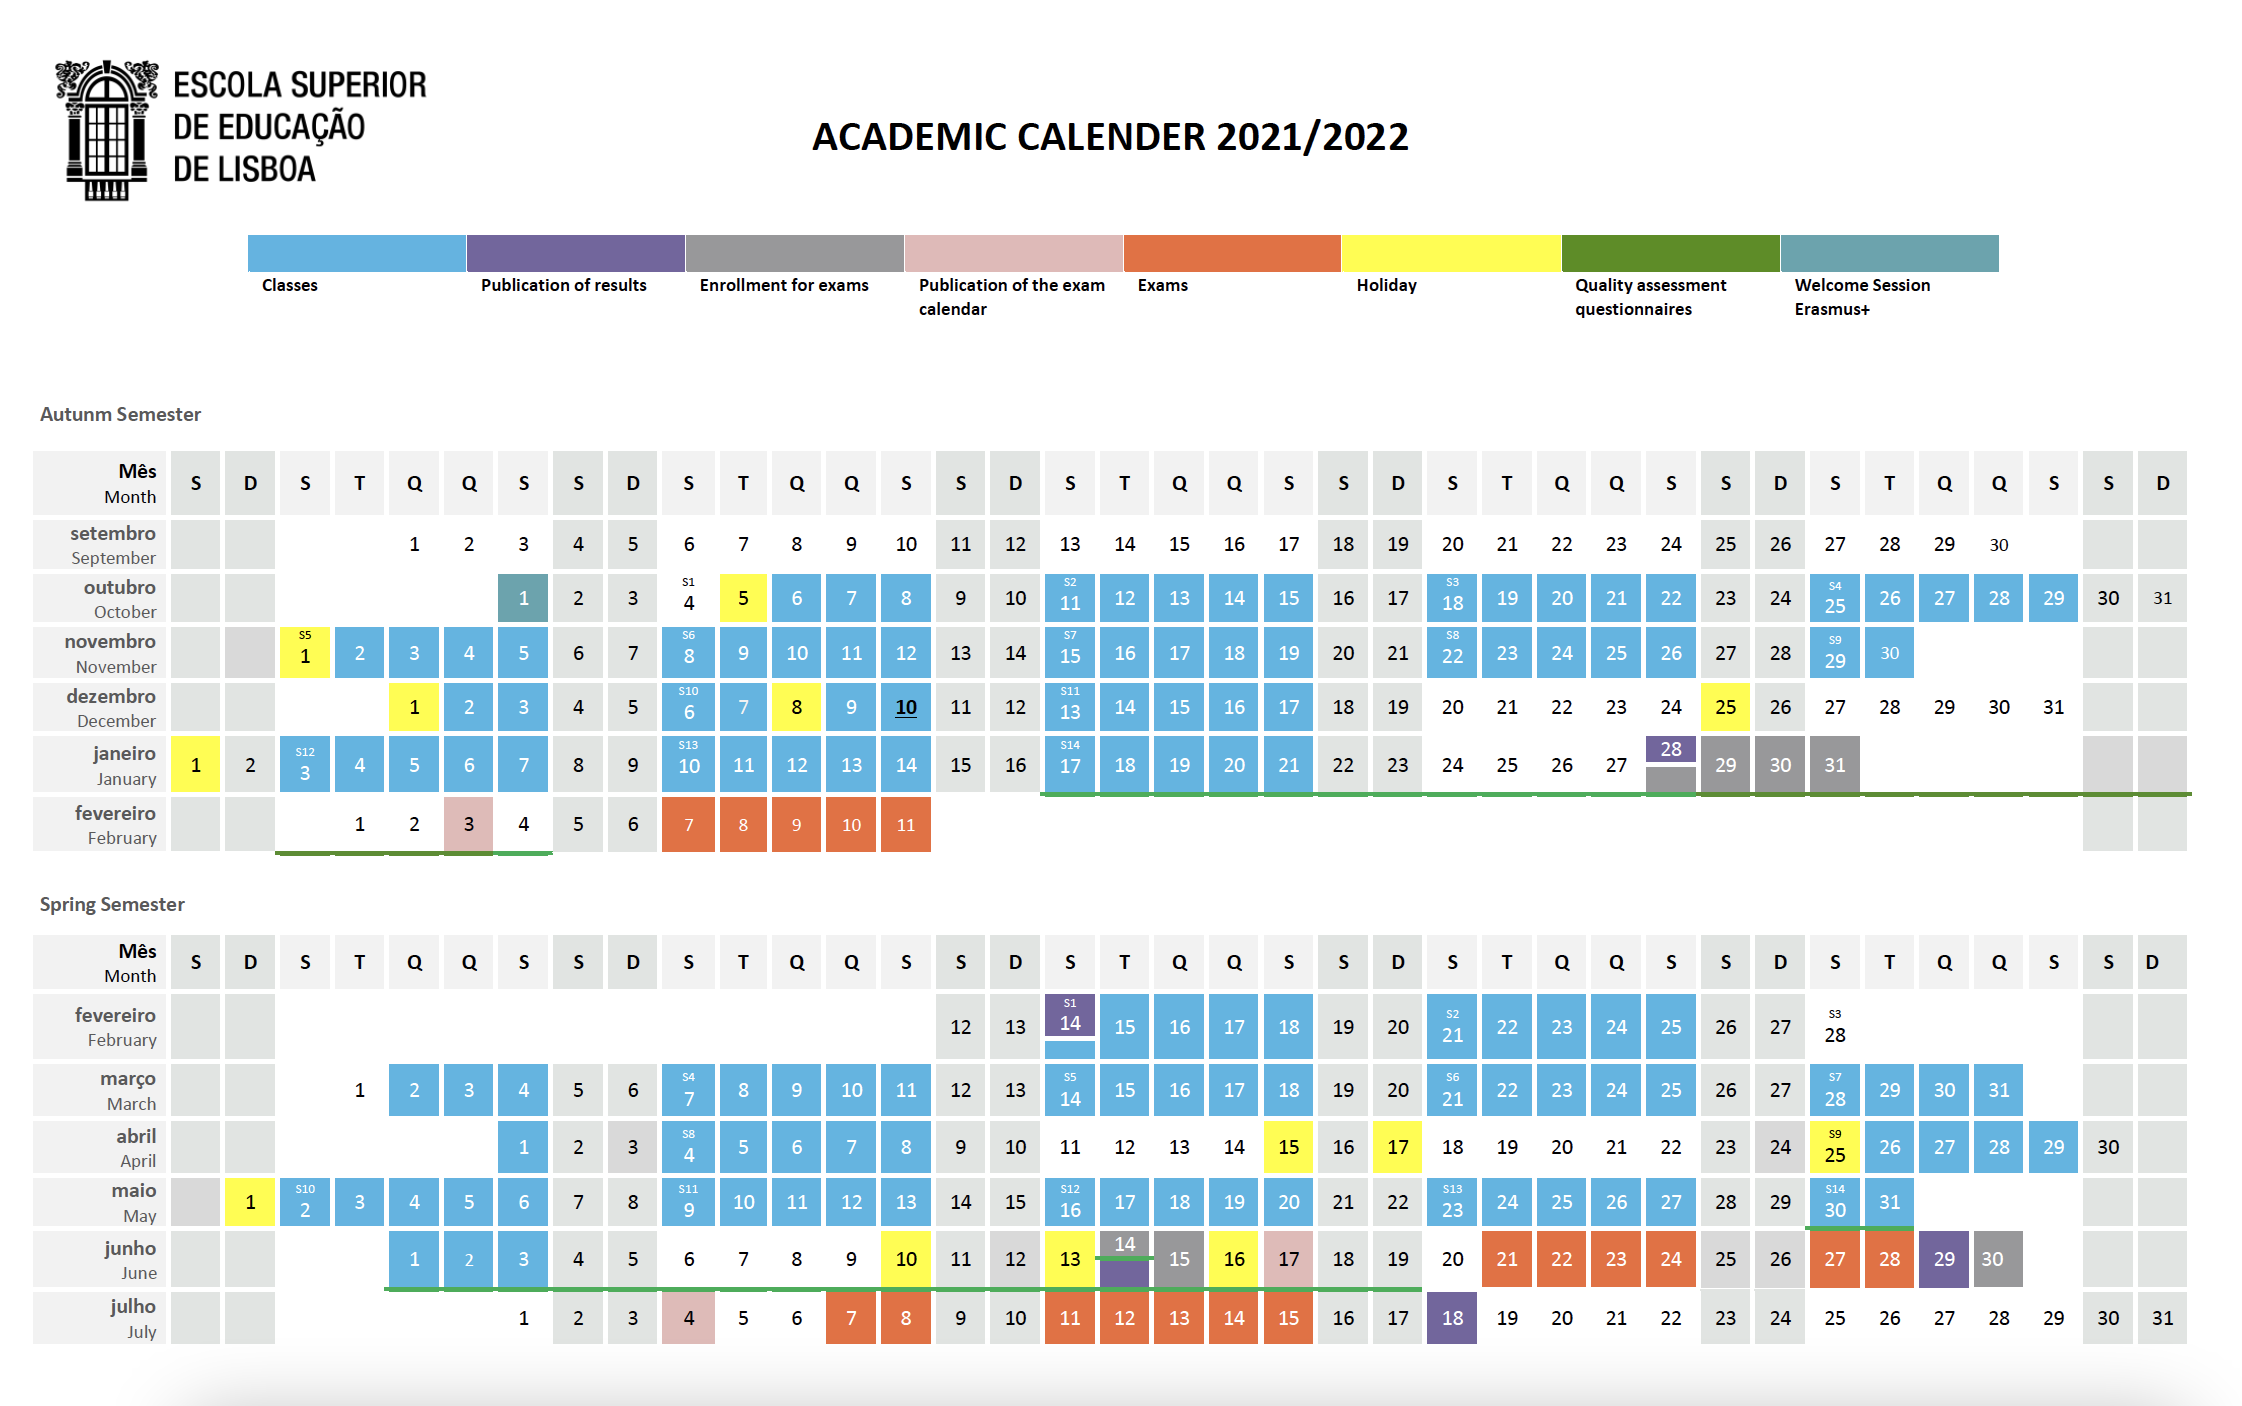 Academic Calendar Escola Superior de Educação de Lisboa